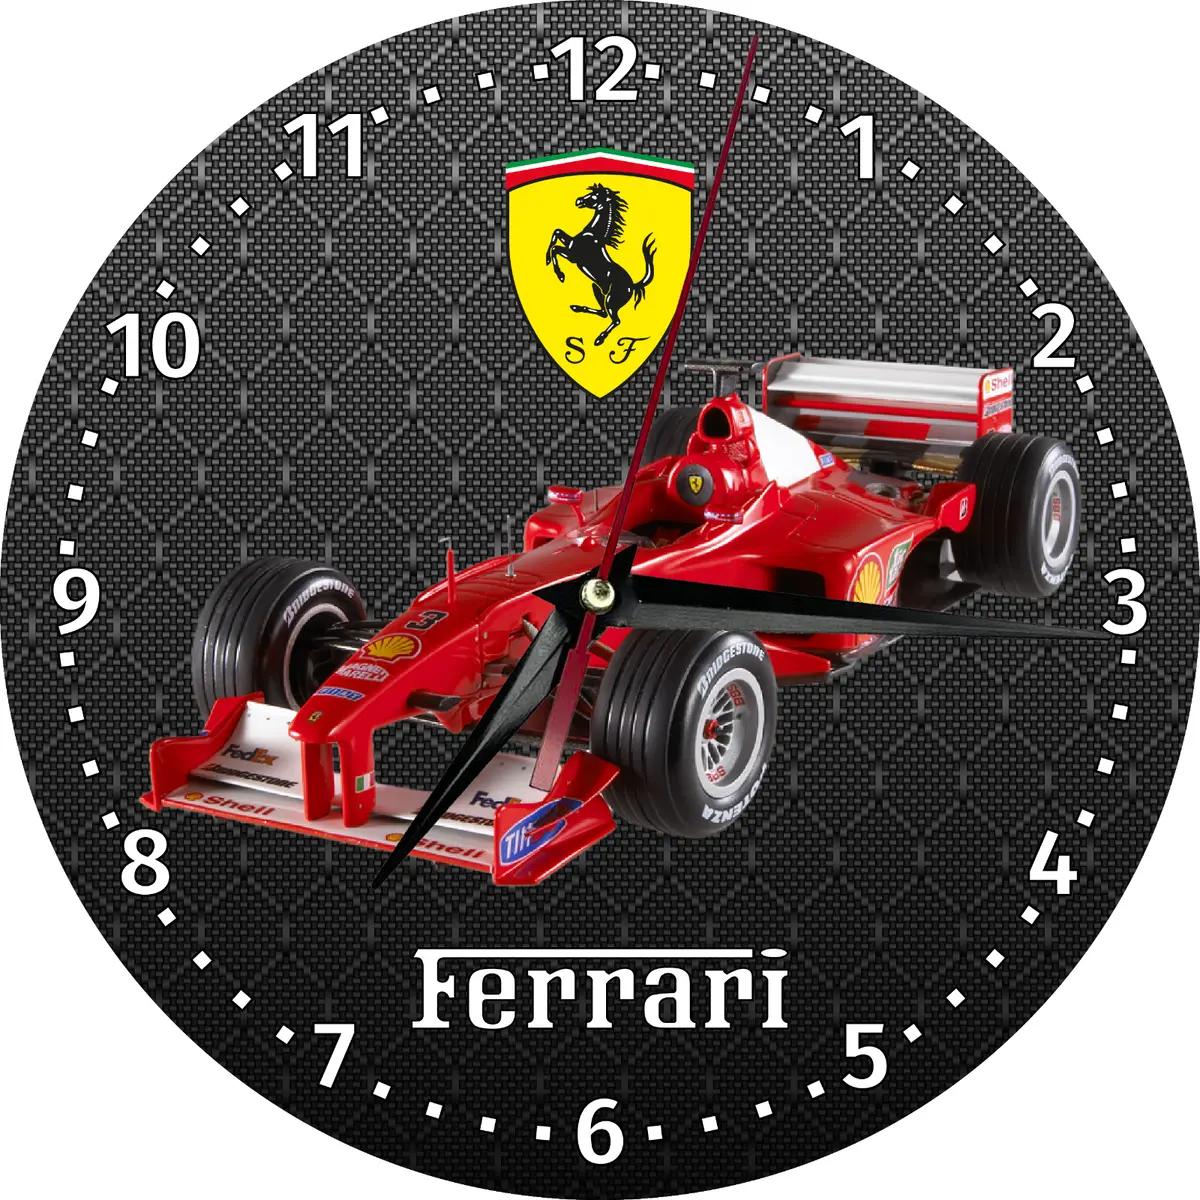 ferrari f1 constructors clock - When did Ferrari last win F1 constructors